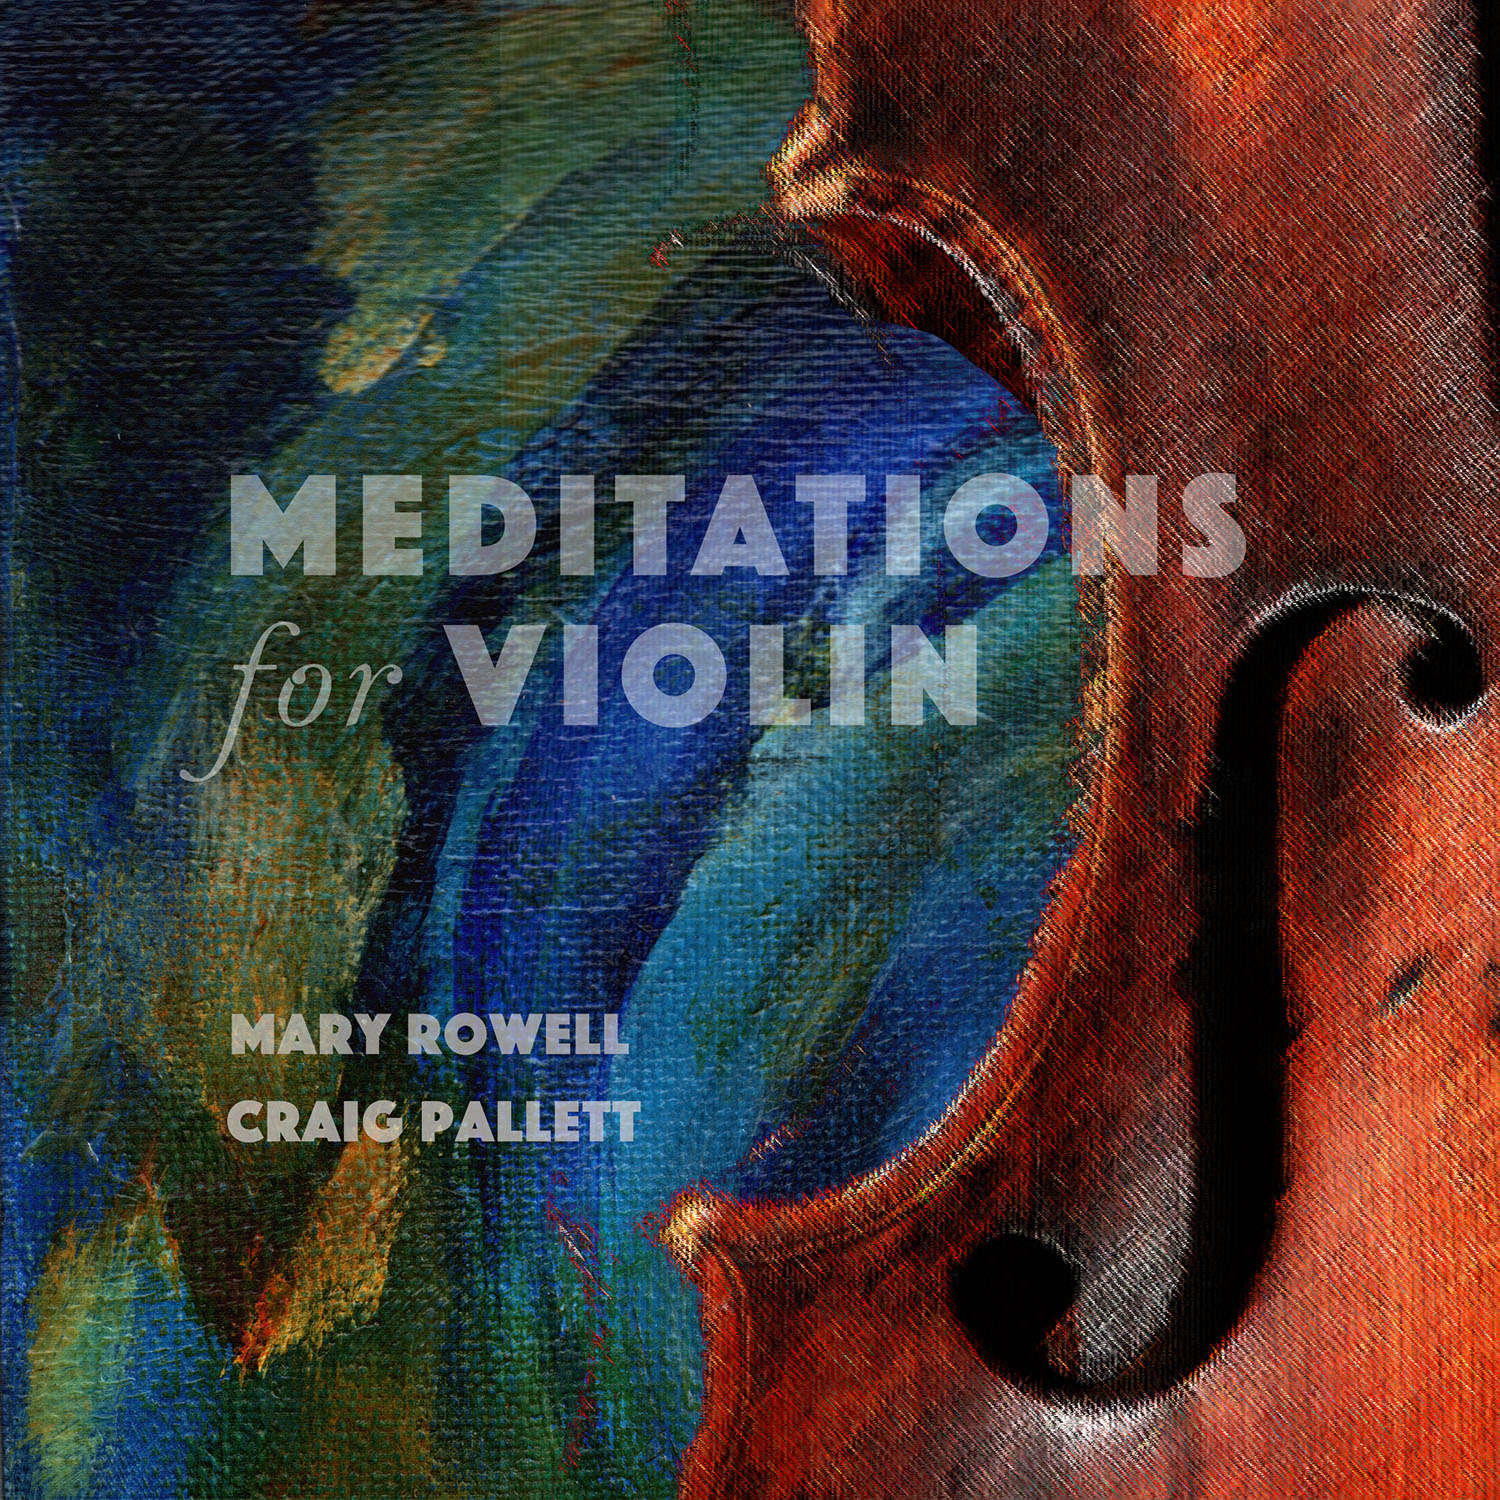 Meditations for Violin – Mary Rowell & Craig Pallett